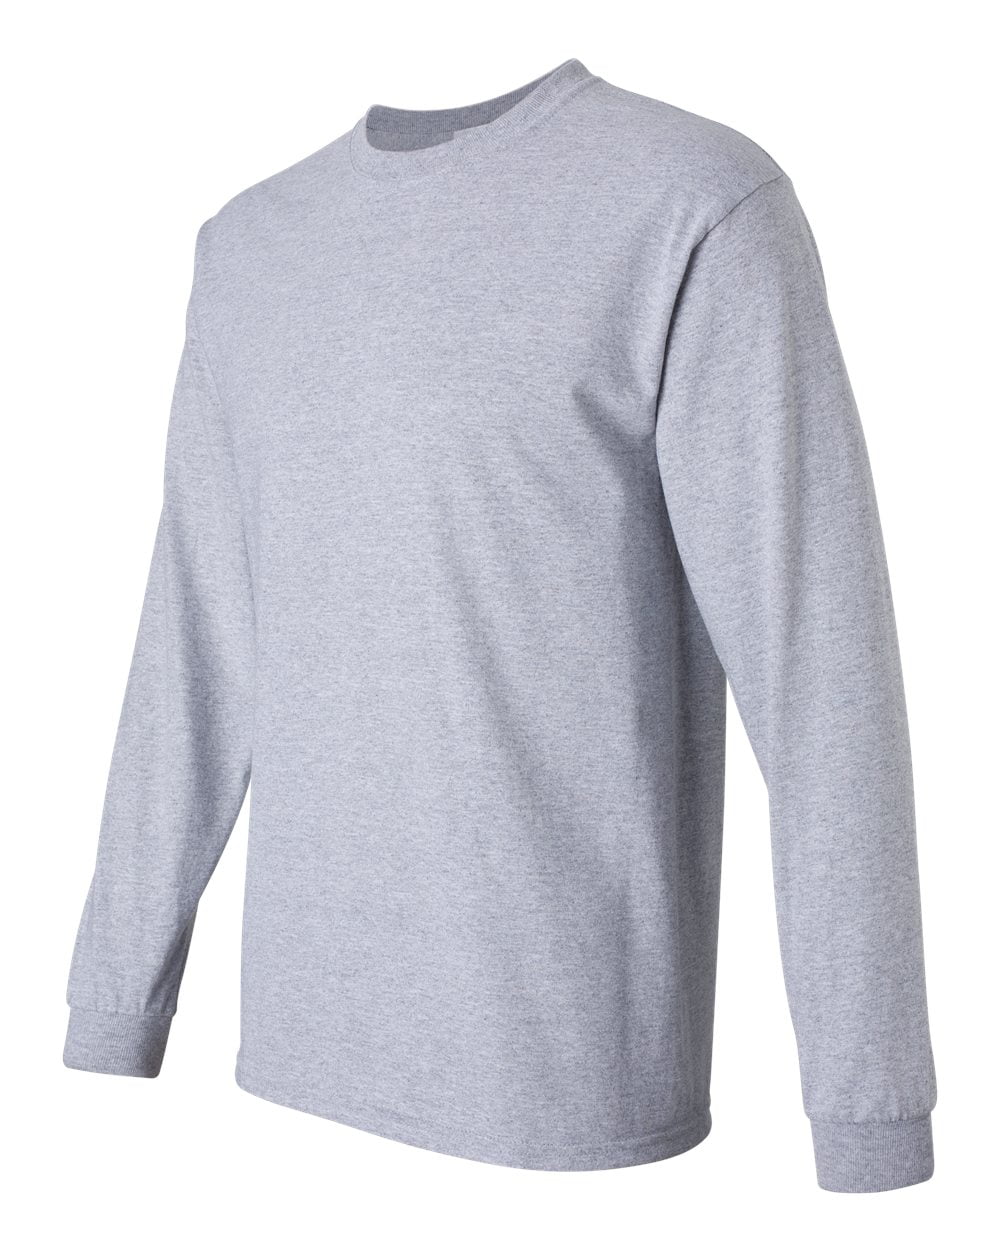 - Ultra Cotton Long Sleeve T-Shirt Walmart.com